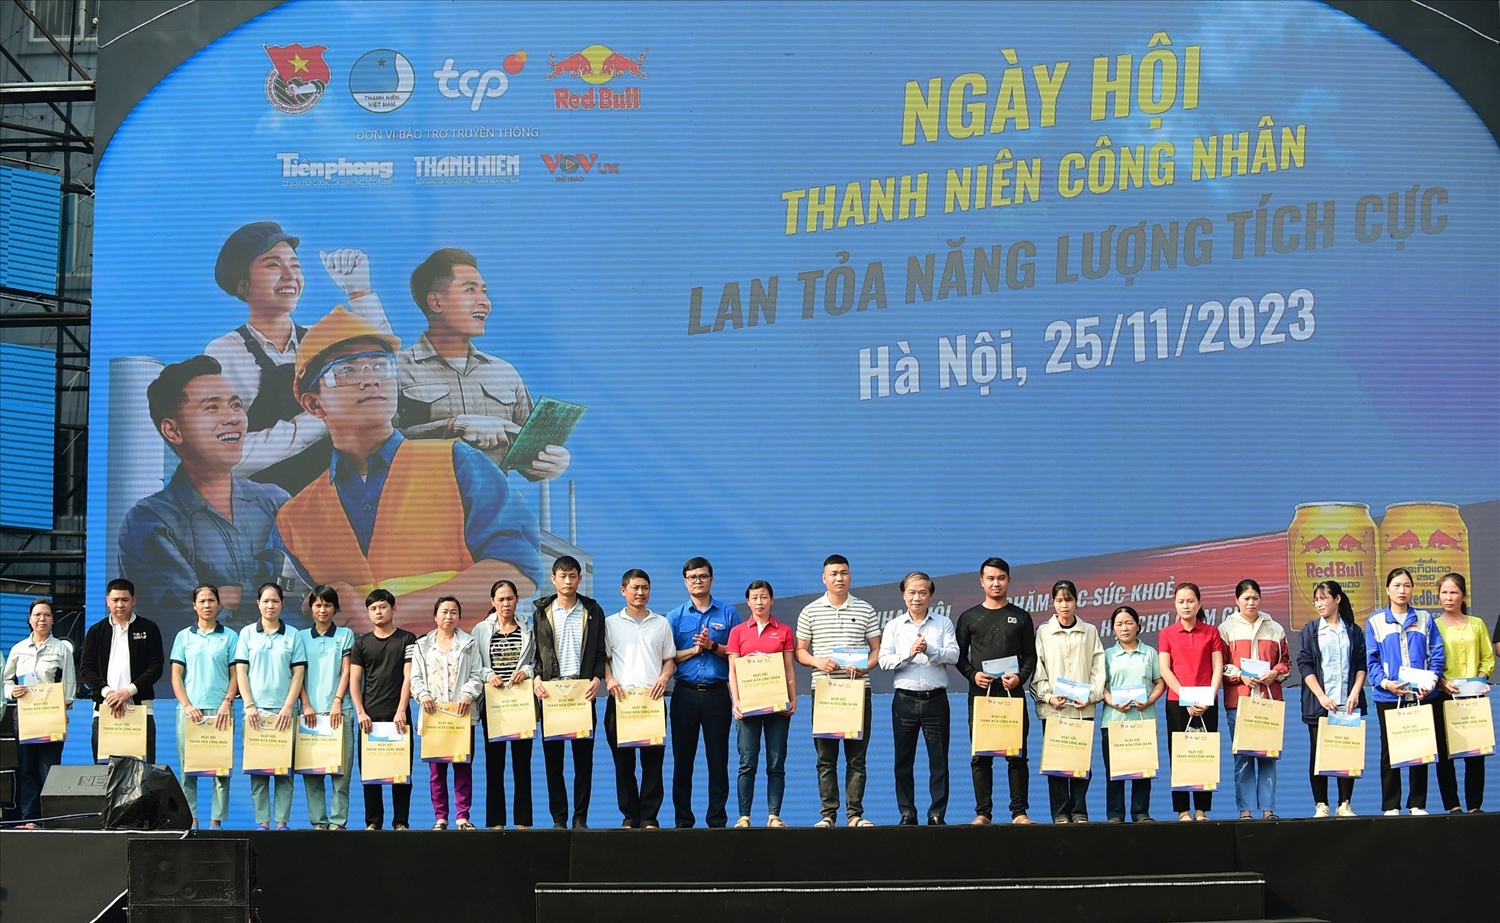 Ban tổ chức trao quà cho công nhân tại Ngày hội “Thanh niên công nhân - Lan tỏa năng lượng tích cực” năm 2023